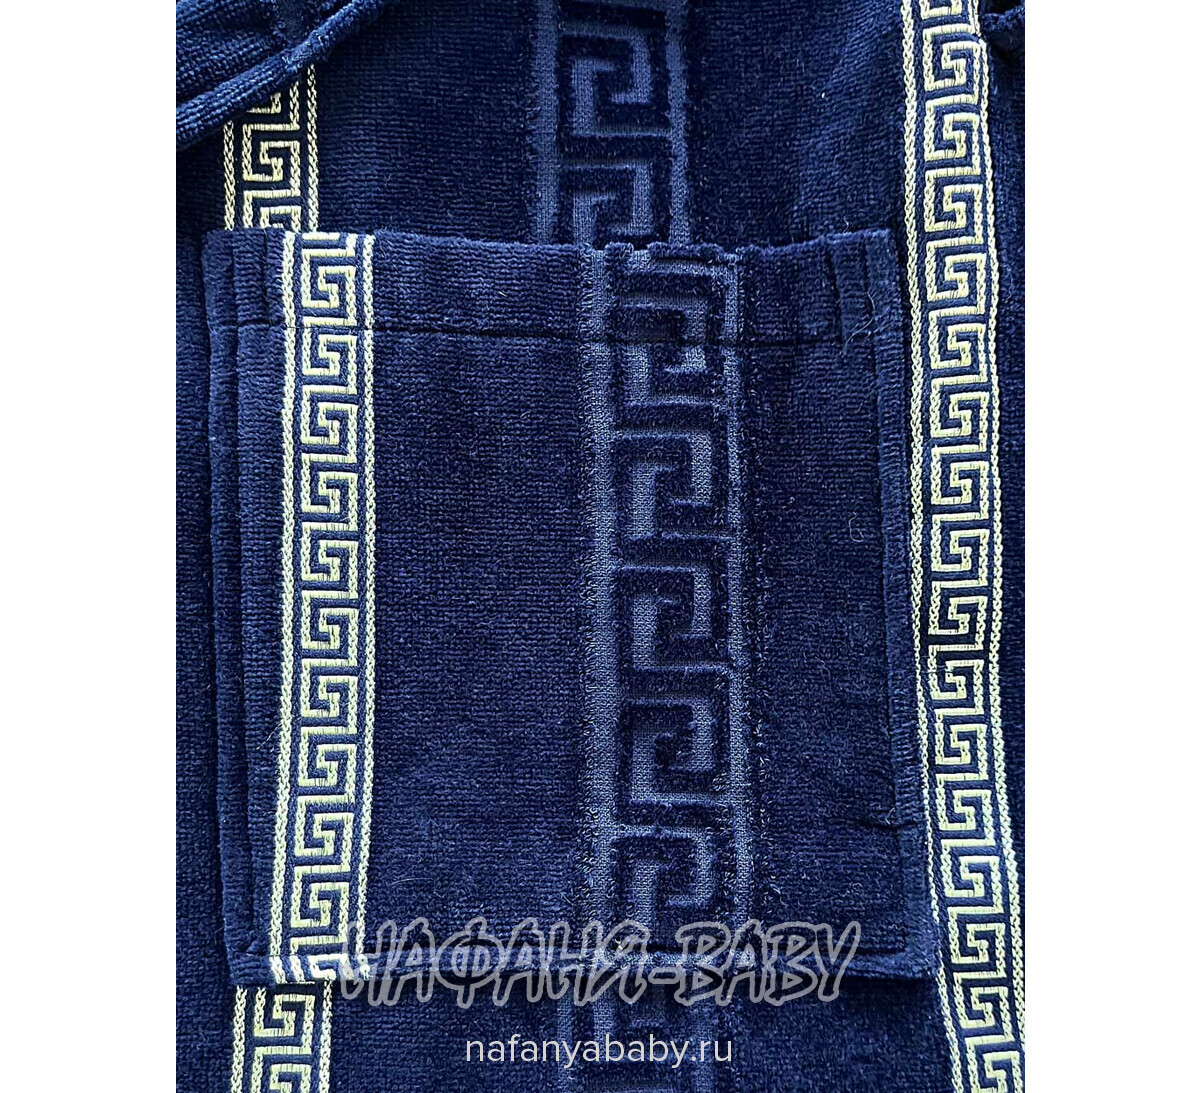 Махровый халат DAYSI, купить в интернет магазине Нафаня. арт: 4040